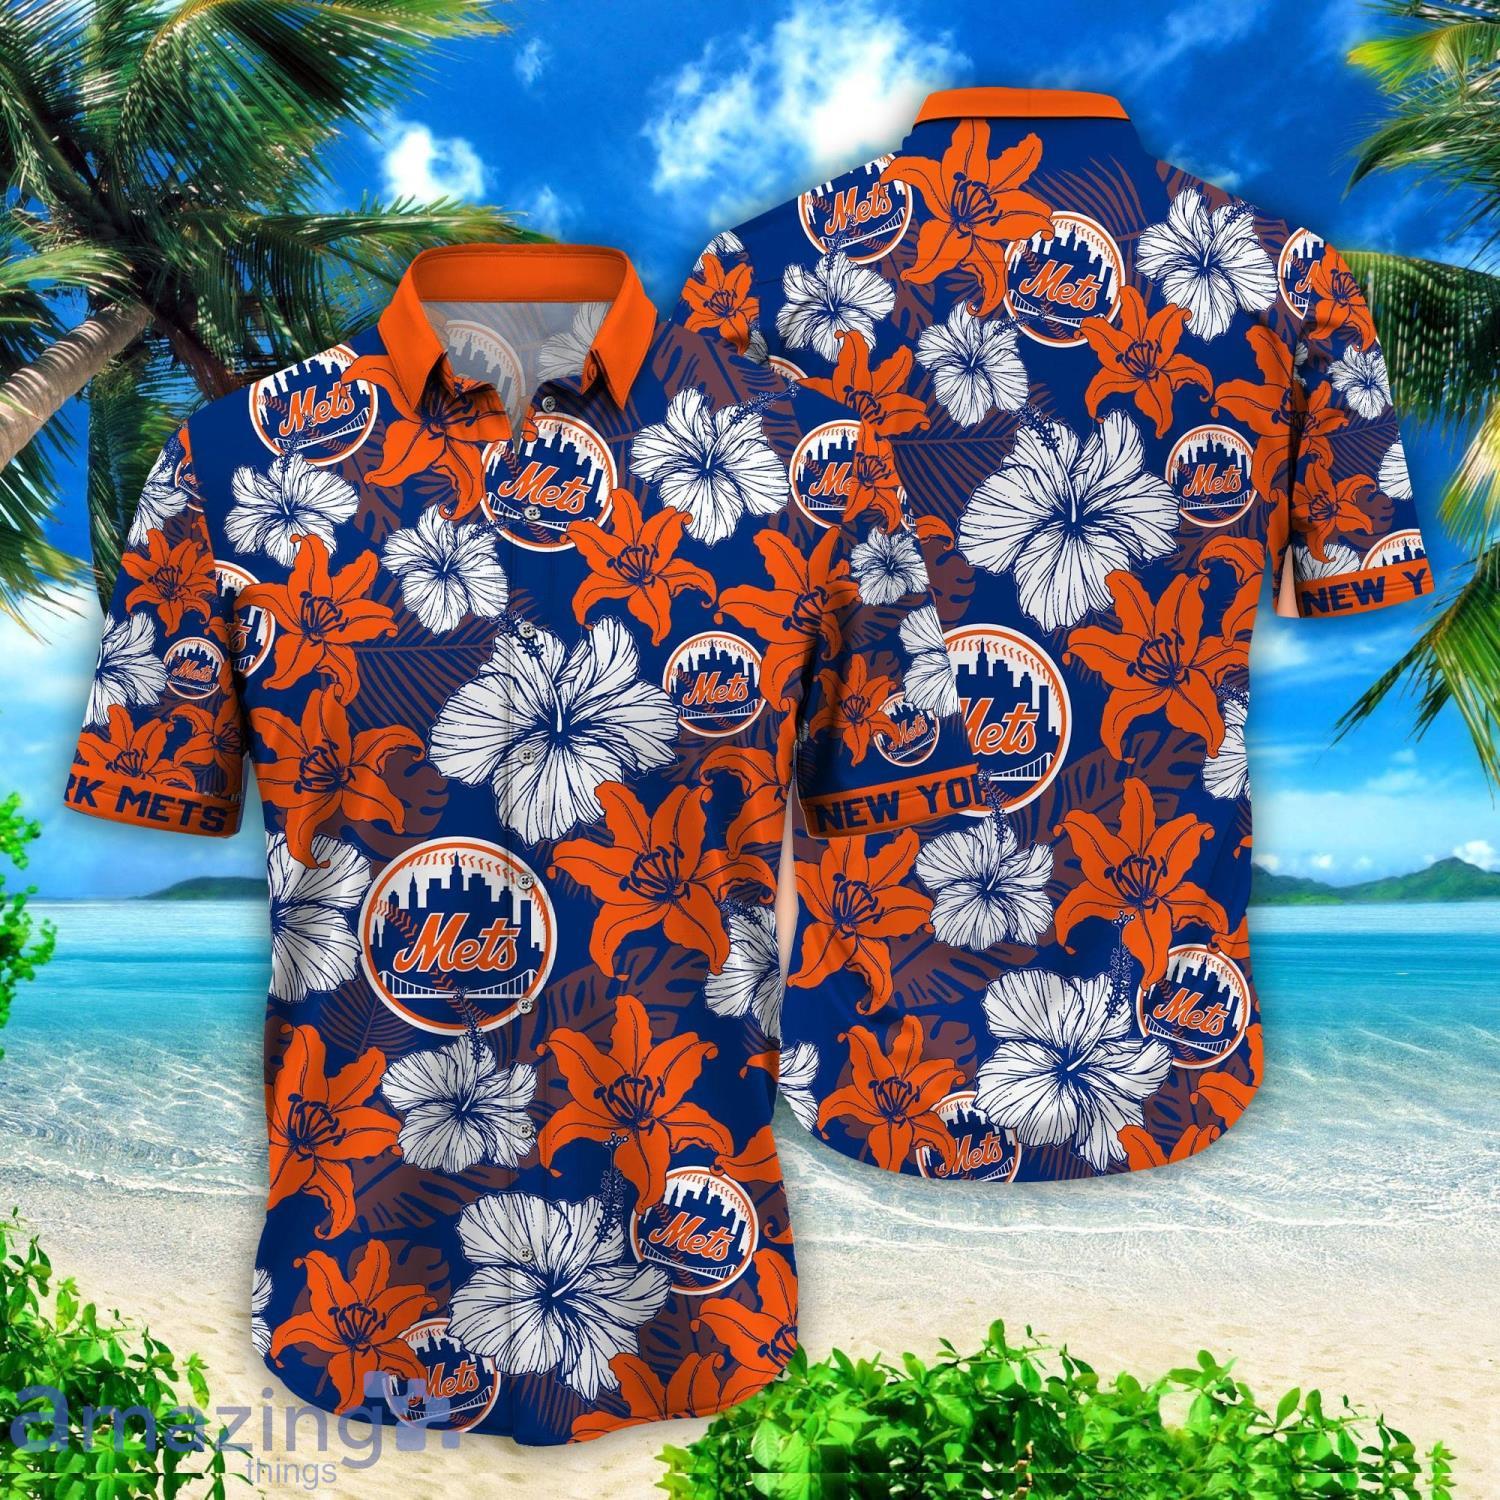 Mets Hawaiian Shirt